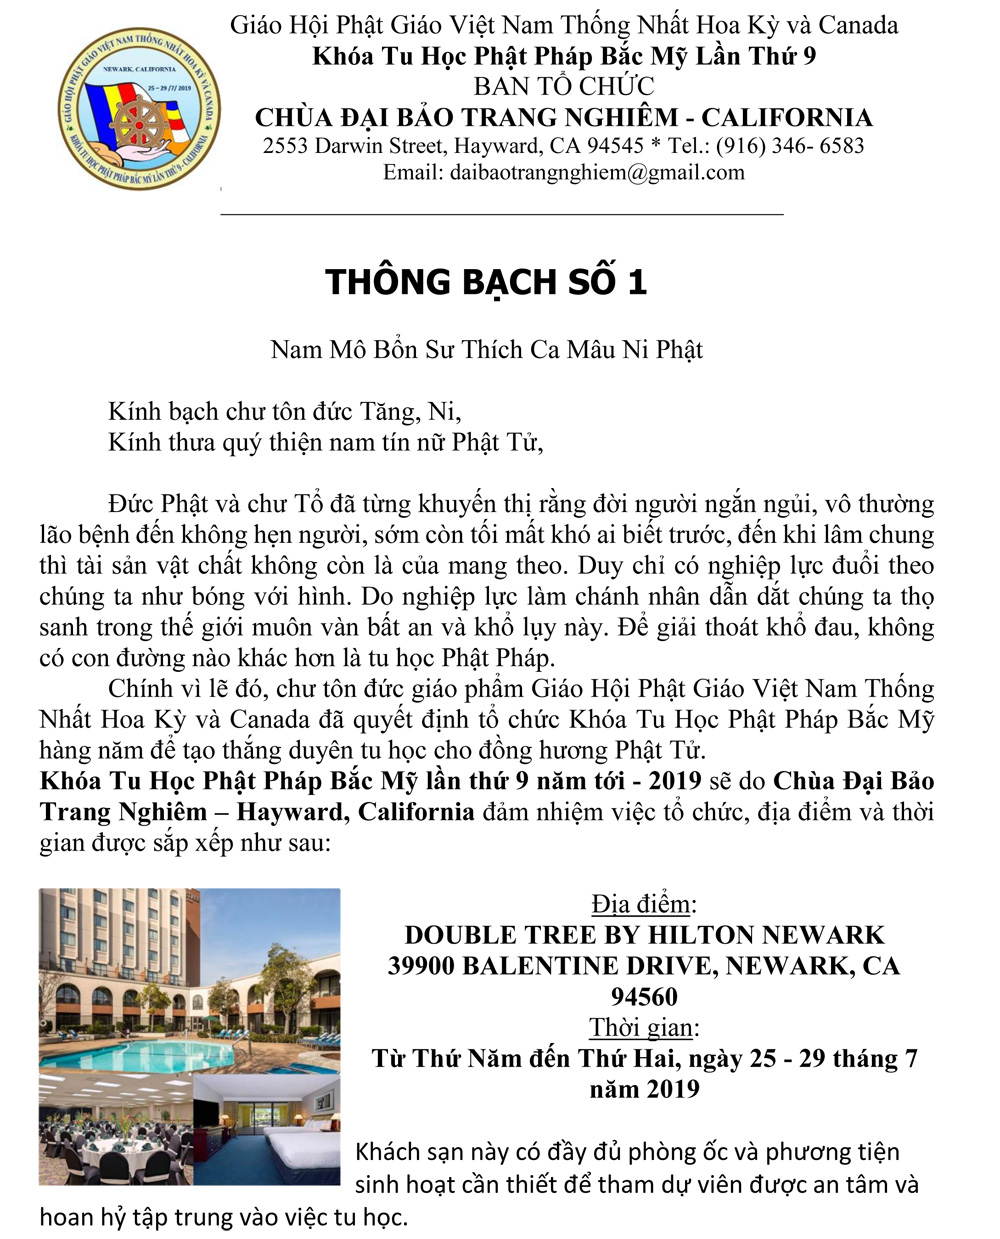 Thong bach so 1 pic- 2019  signature-1